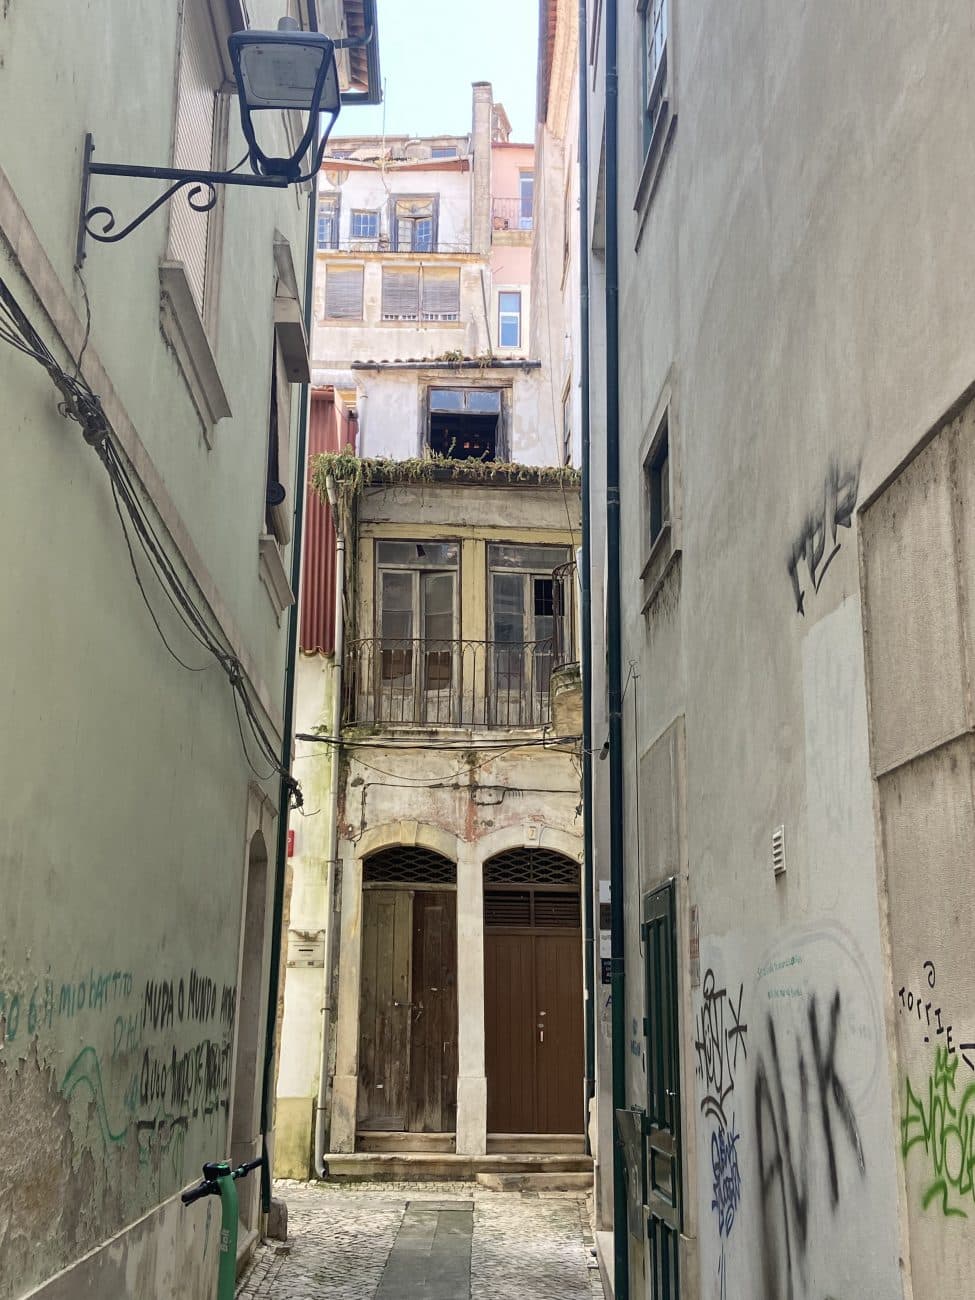 Alte Straßen mit Blick auf leicht verfallene Gebäude in Coimbra